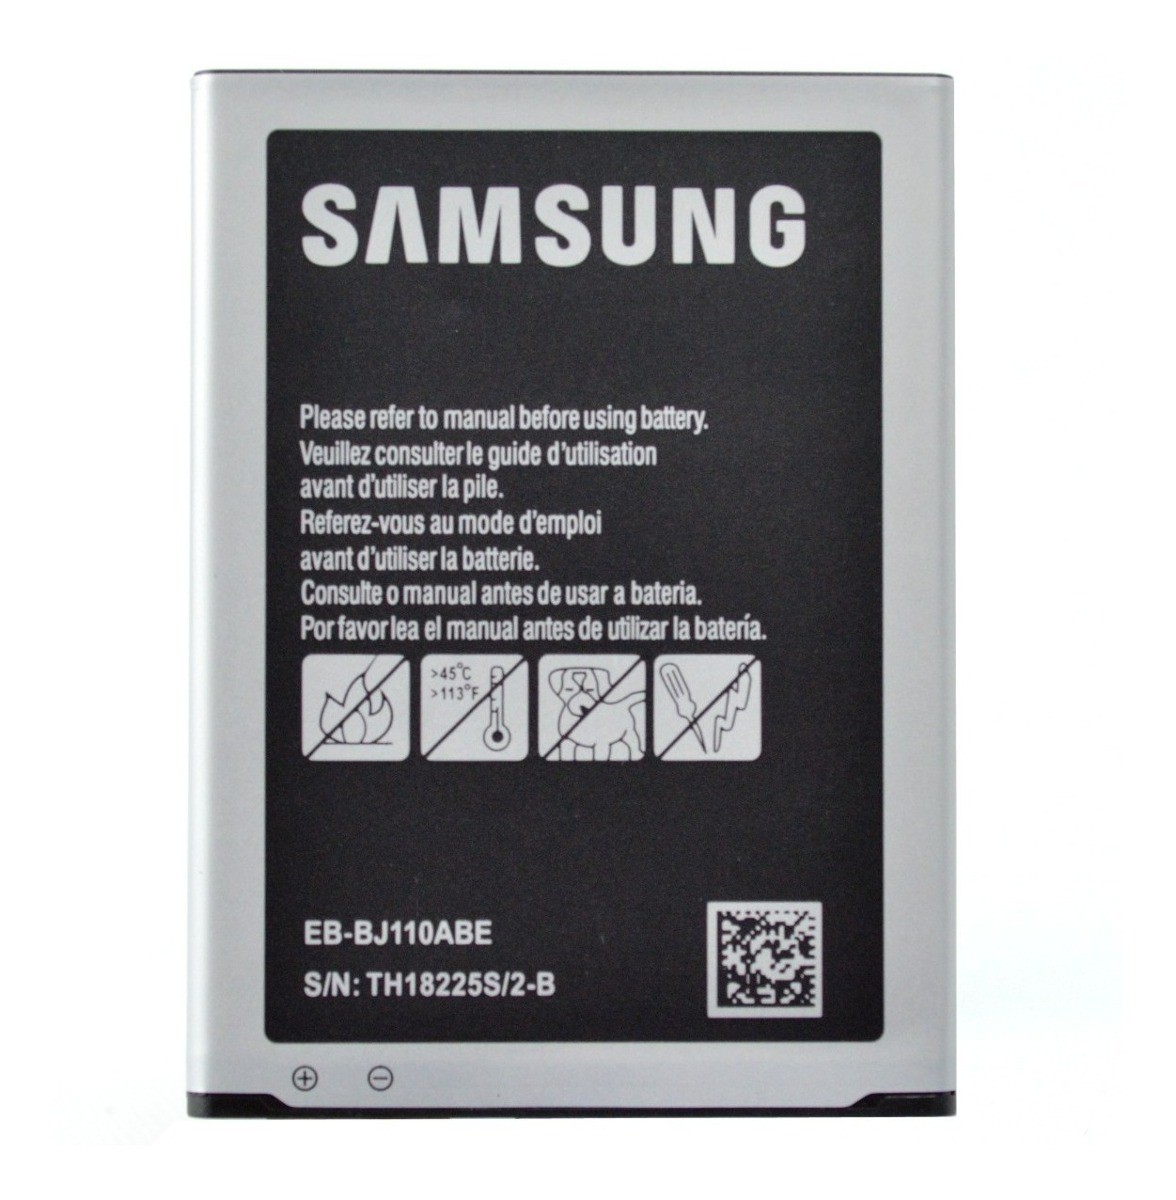 silbar Sotavento gráfico Bateria Celular Samsung J1 Ace Bj110Abe